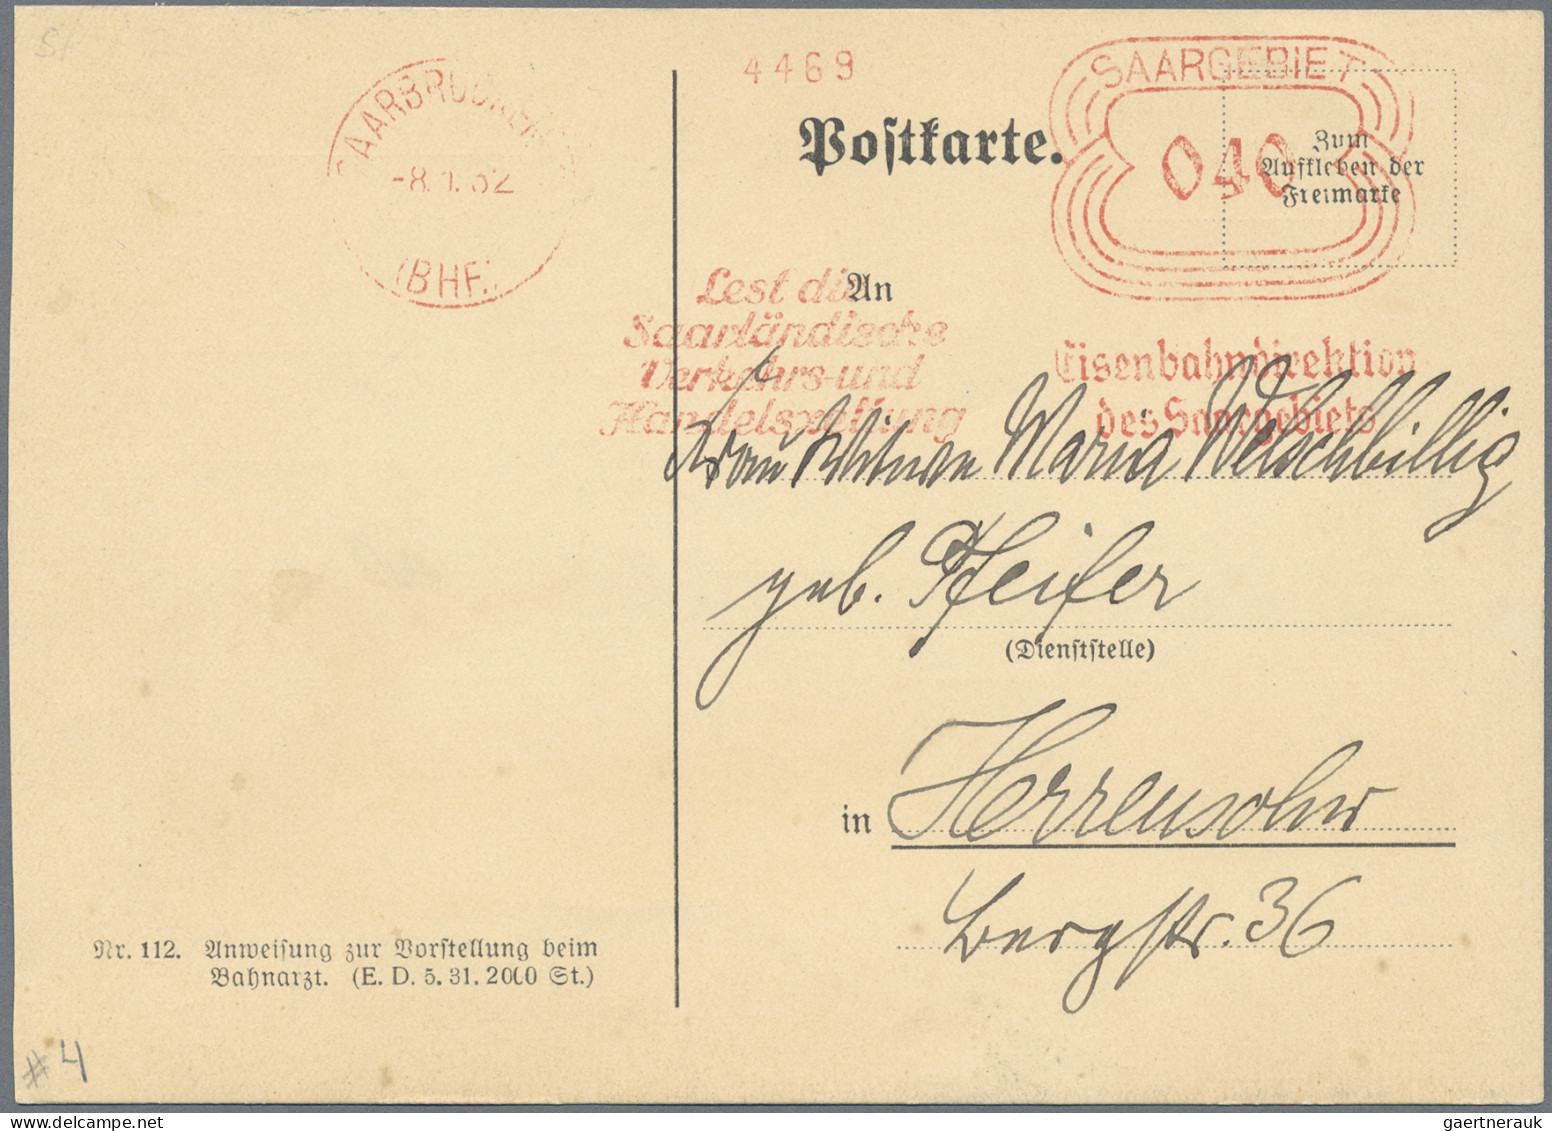 Nachlässe: 1919/2000 (ca), interessanter Bestand "Deutschland" dabei eine Stempe